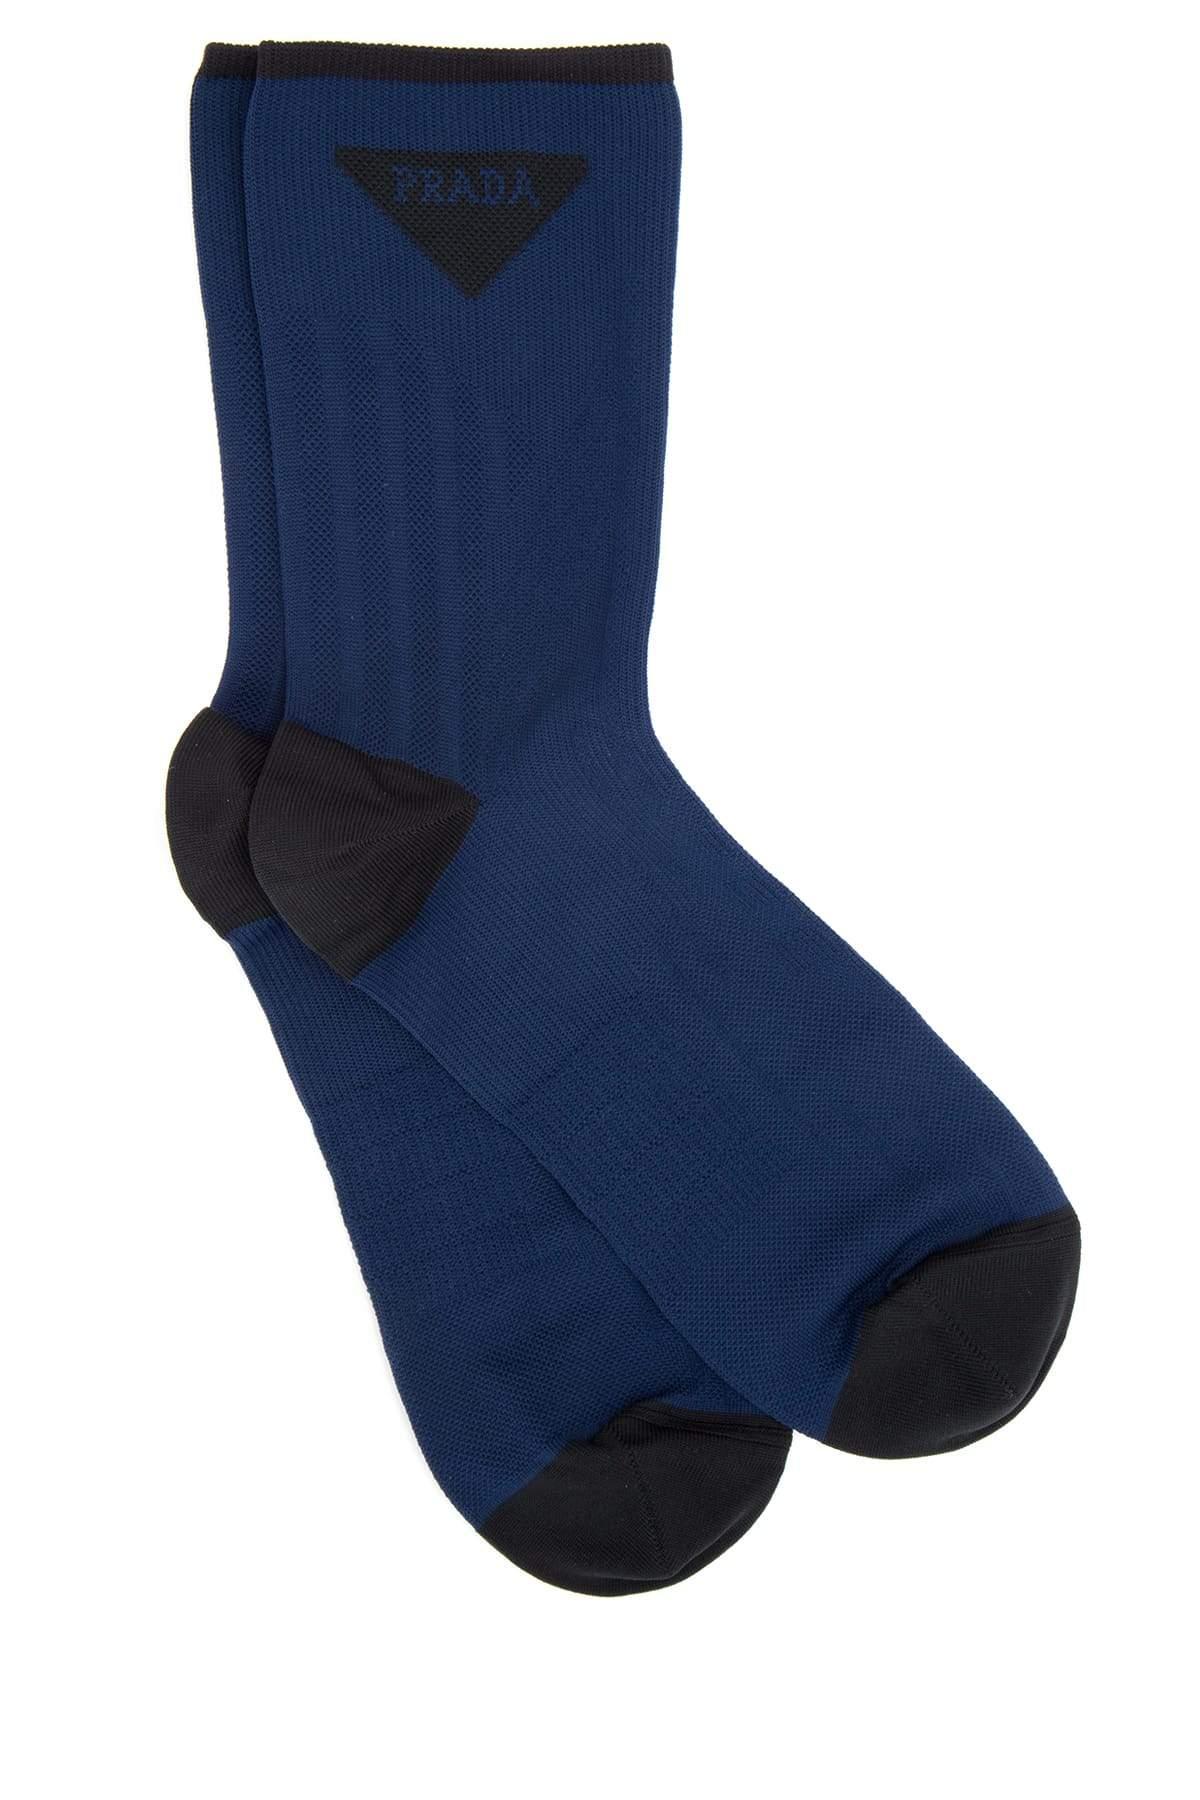 Prada Synthetic Logo Socks in Blue for Men - Lyst